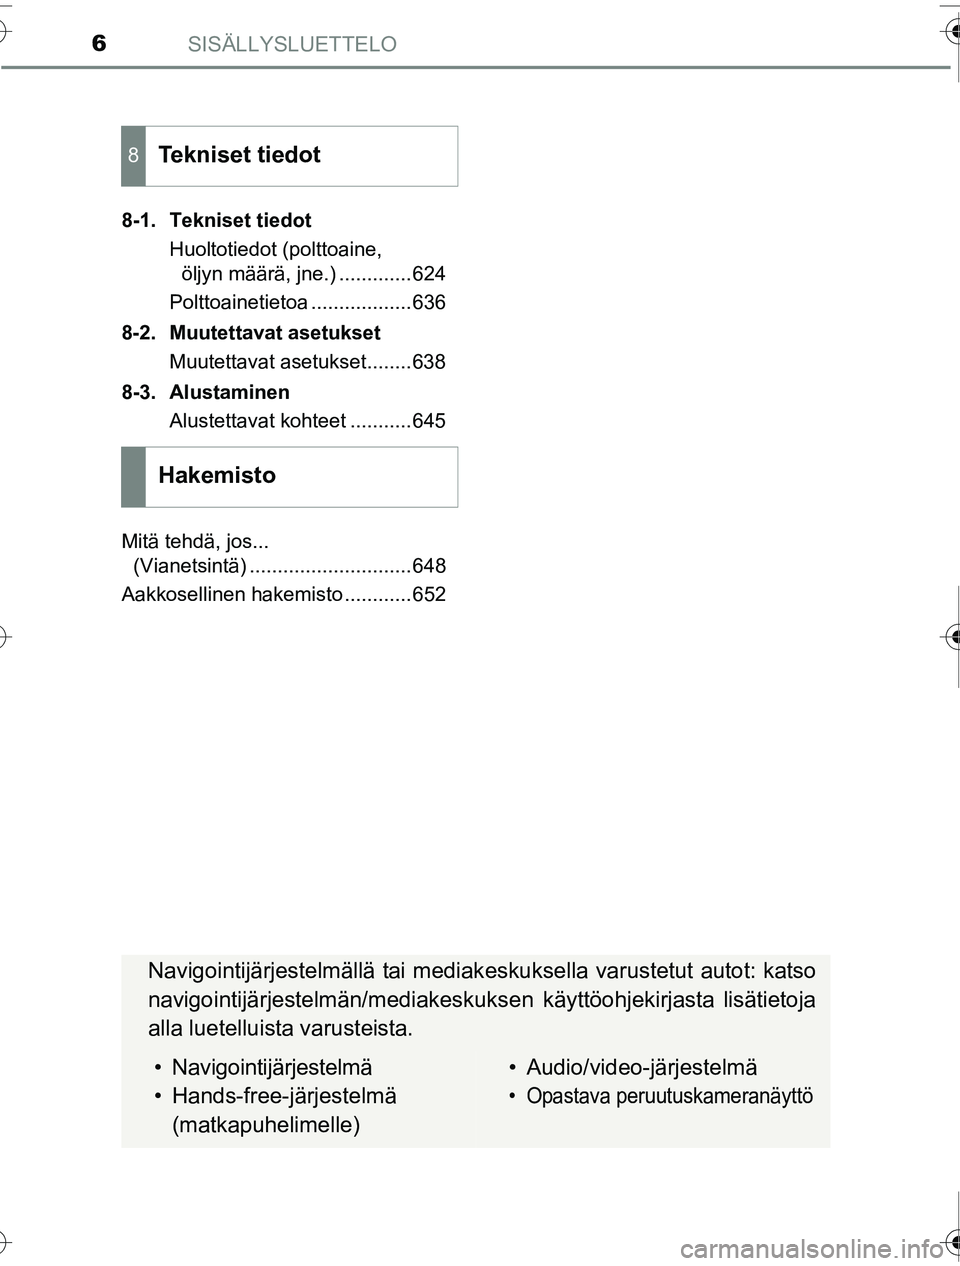 TOYOTA PRIUS 2016  Omistajan Käsikirja (in Finnish) SISÄLLYSLUETTELO6
OM47A31FI8-1. Tekniset tiedot
Huoltotiedot (polttoaine, öljyn määrä, jne.) .............624
Polttoainetietoa ..................636
8-2. Muutettavat asetukset Muutettavat asetuks